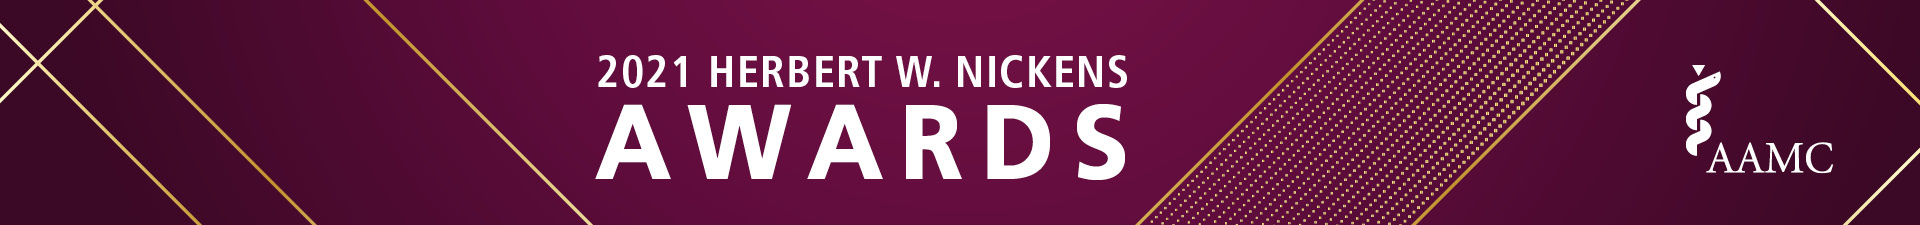 2021 Herbert W. Nickens Award Event Banner